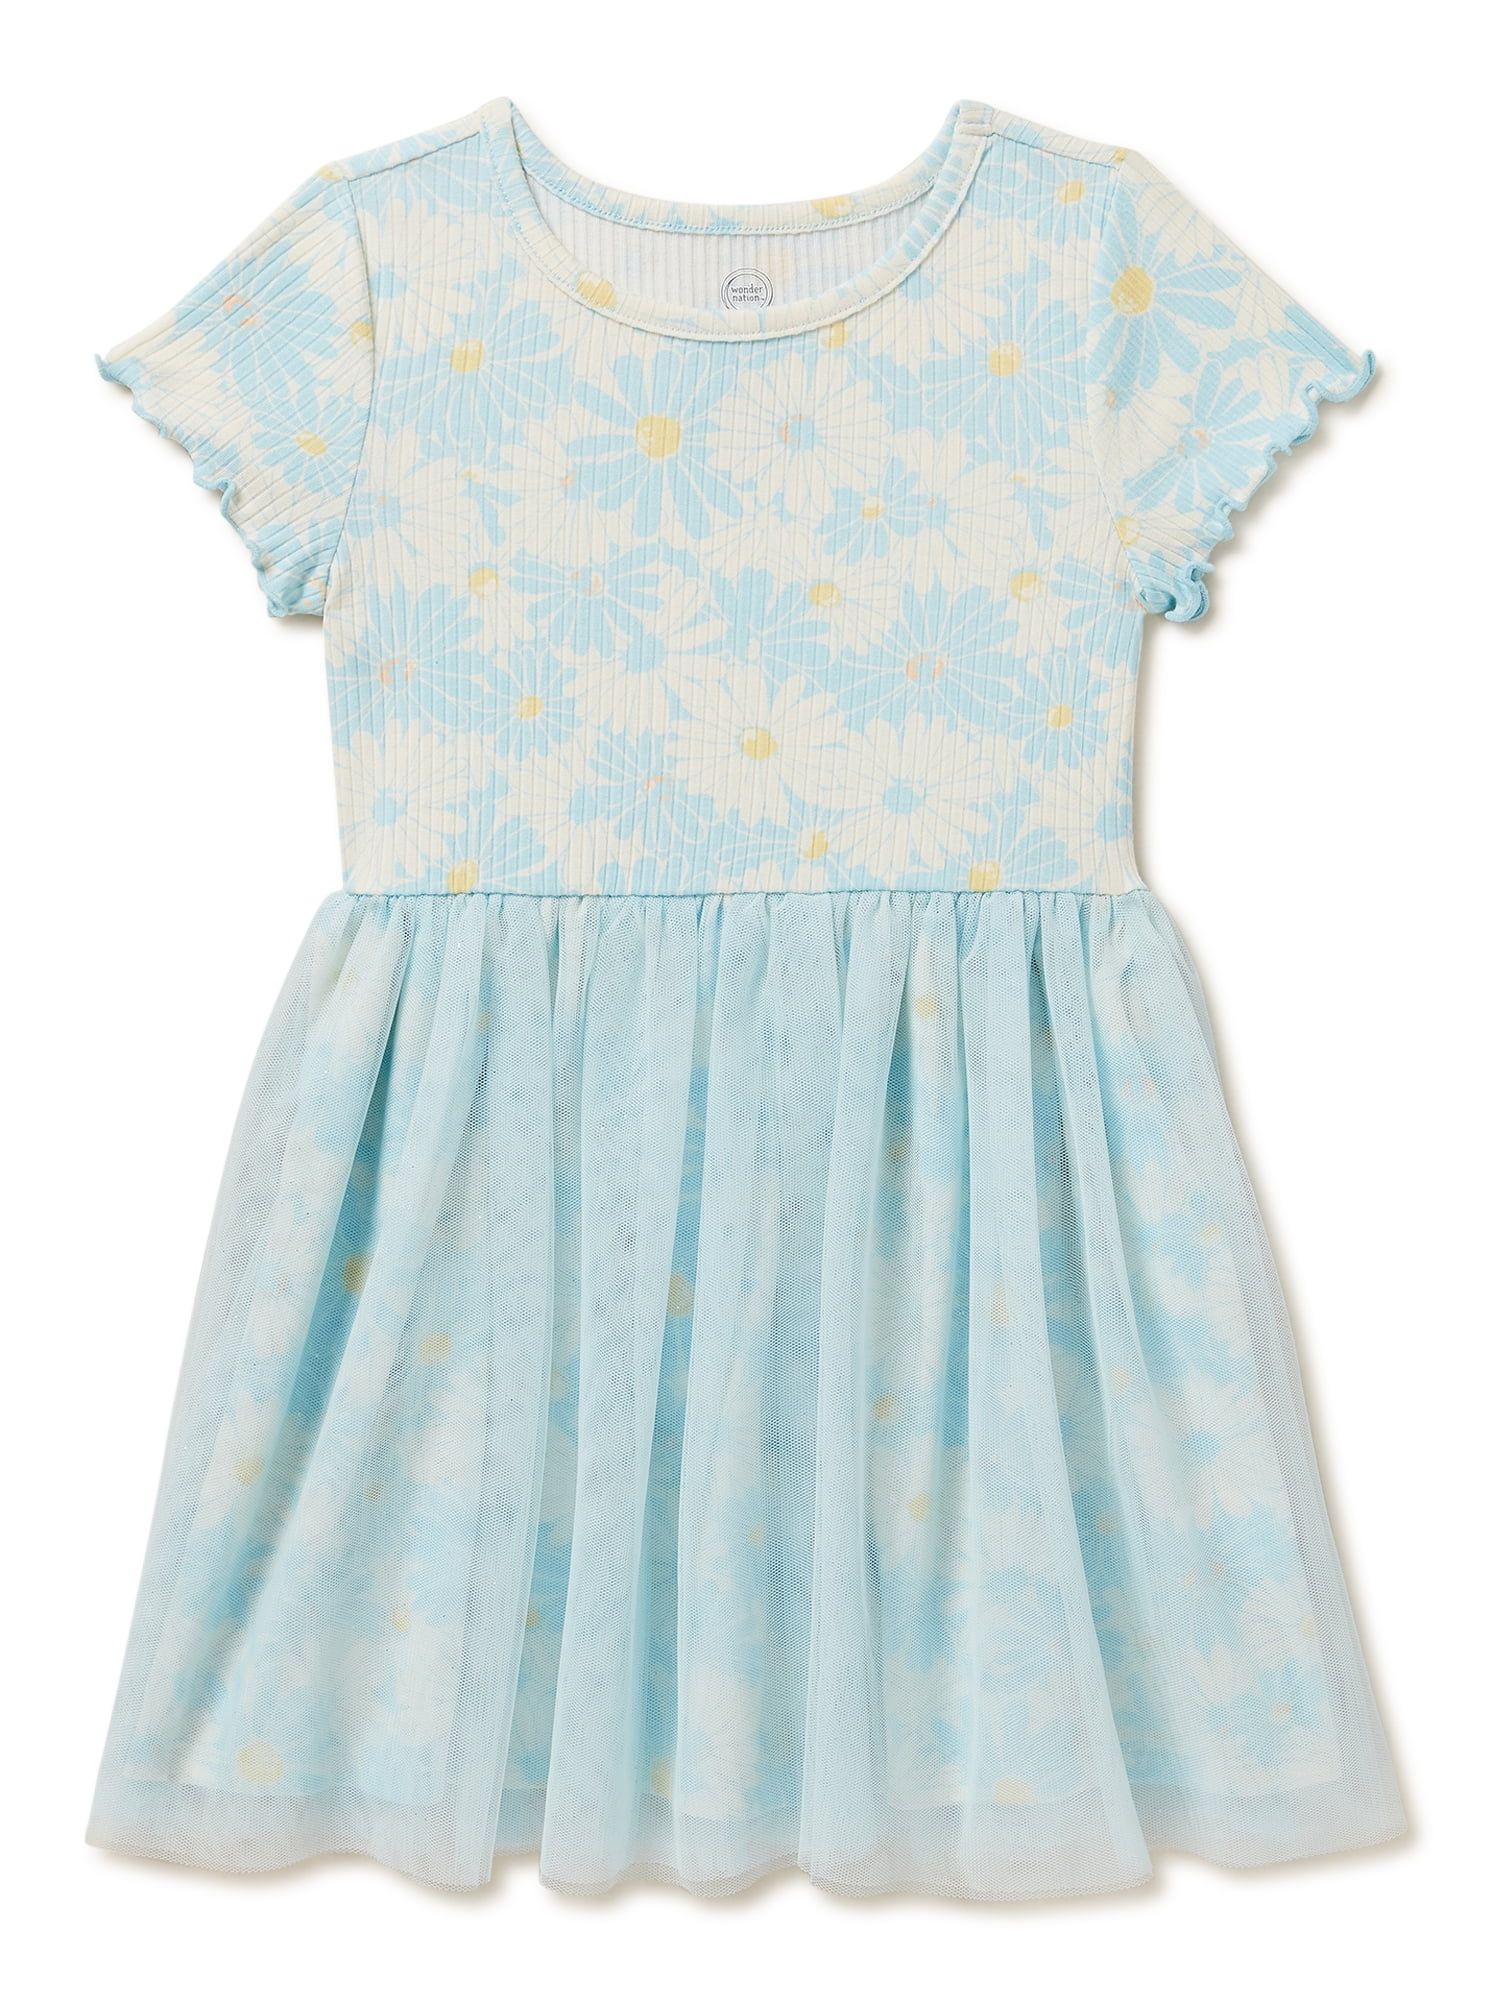 Wonder Nation Baby and Toddler Girls Tutu Dress, Sizes 12M-5T | Walmart (US)